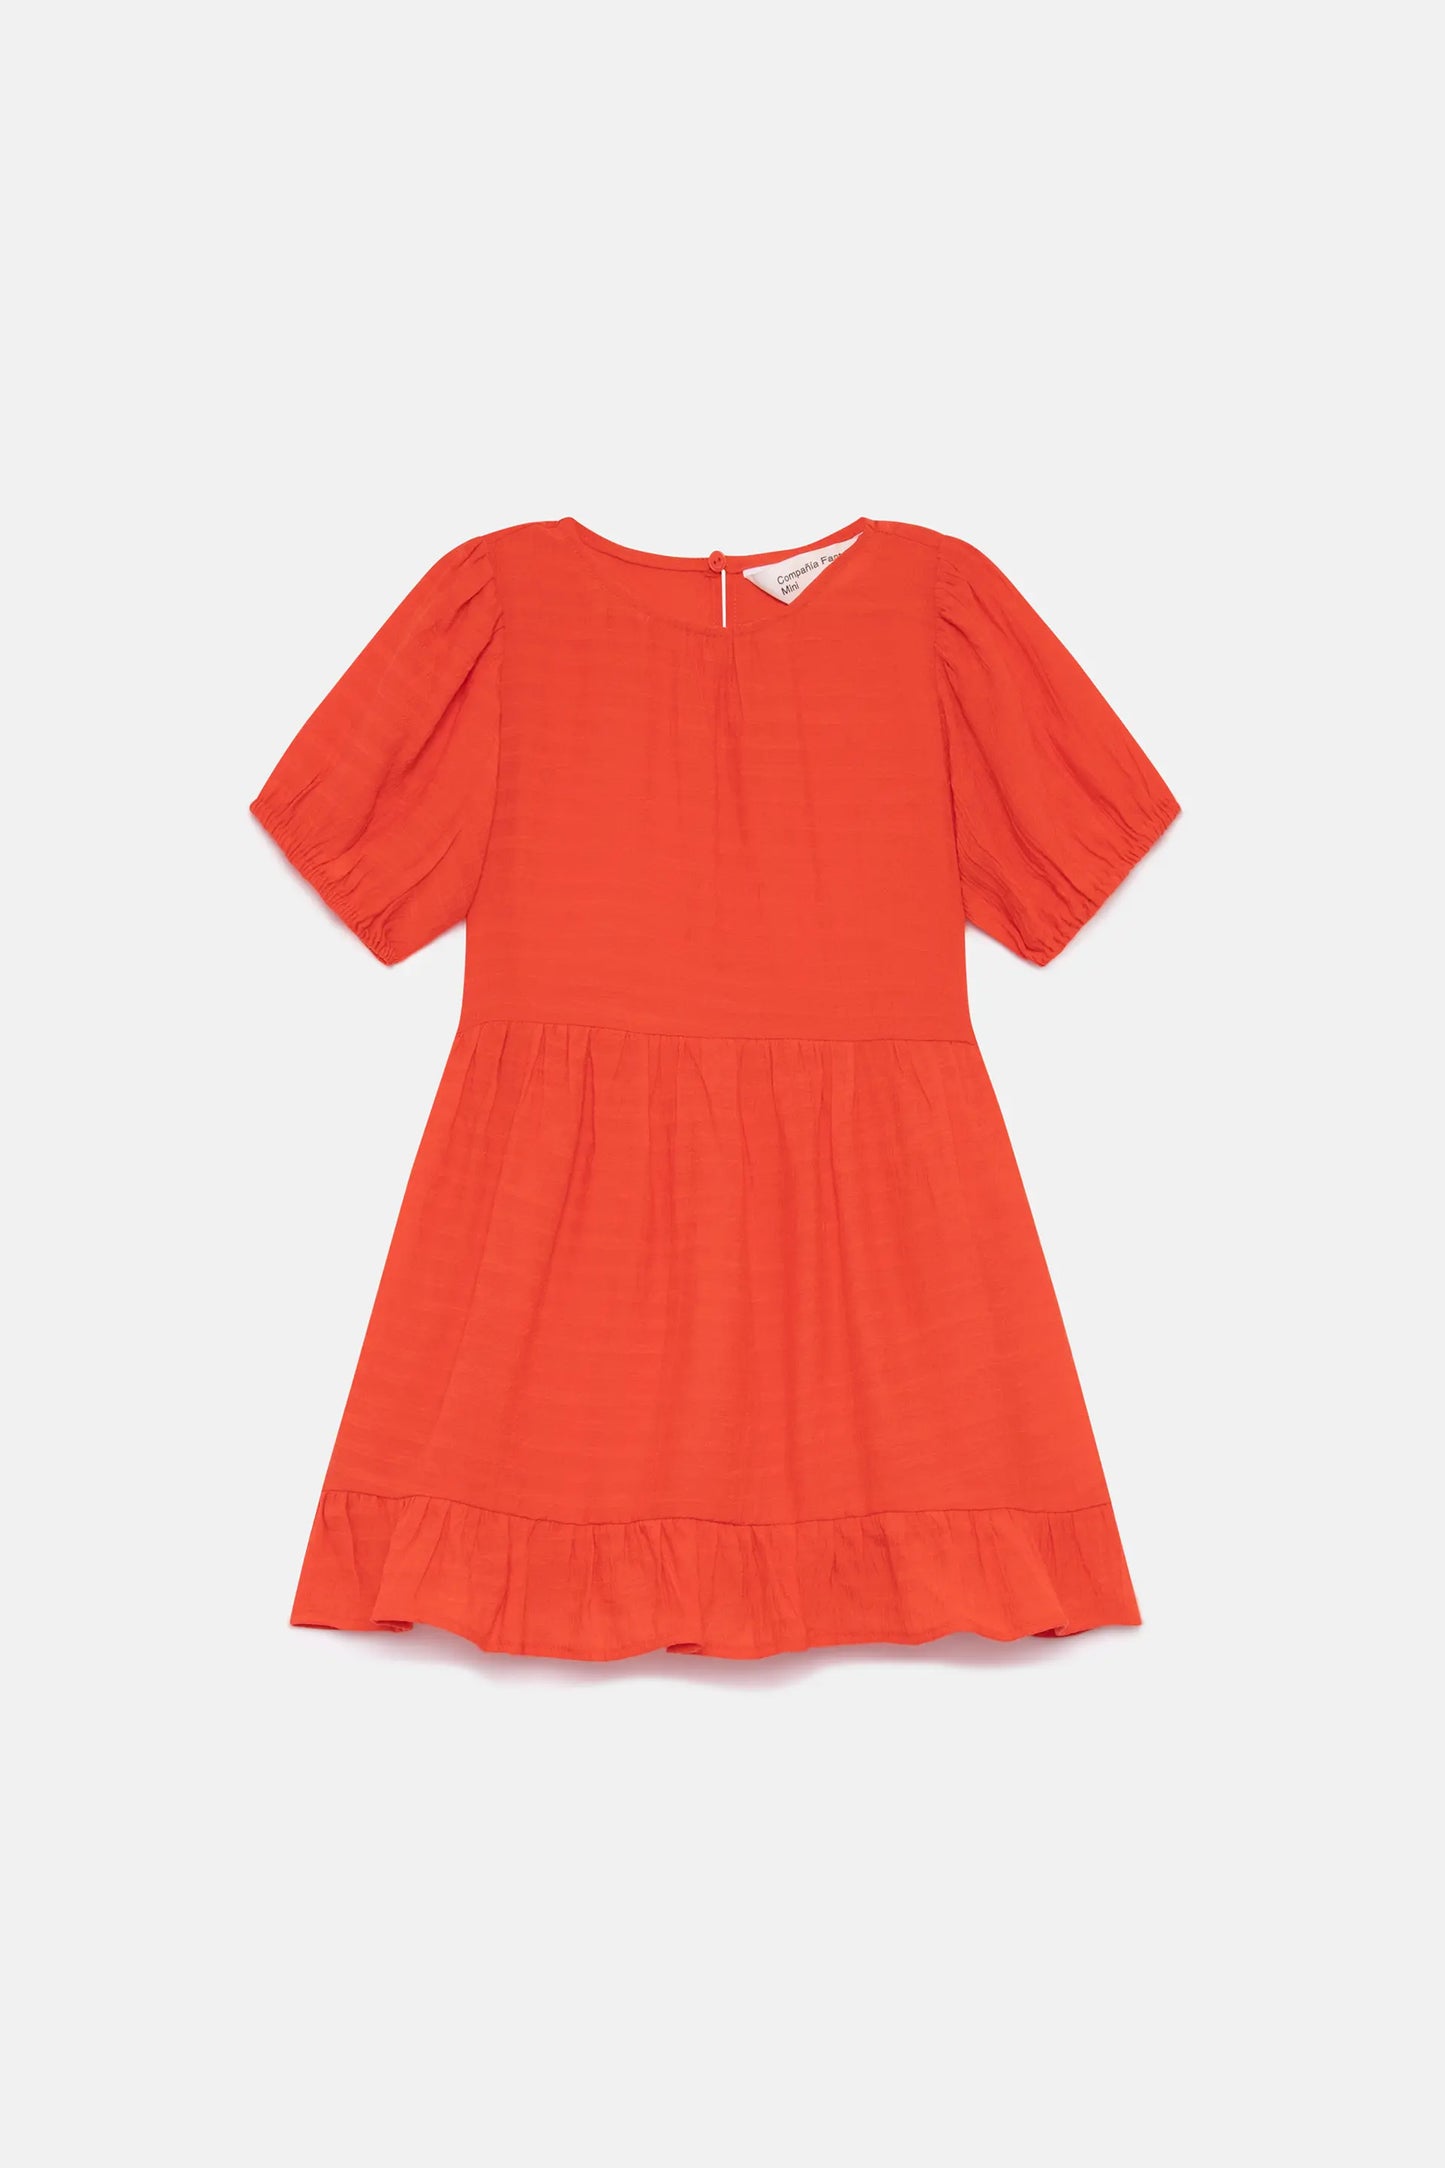 Short orange girl's dress